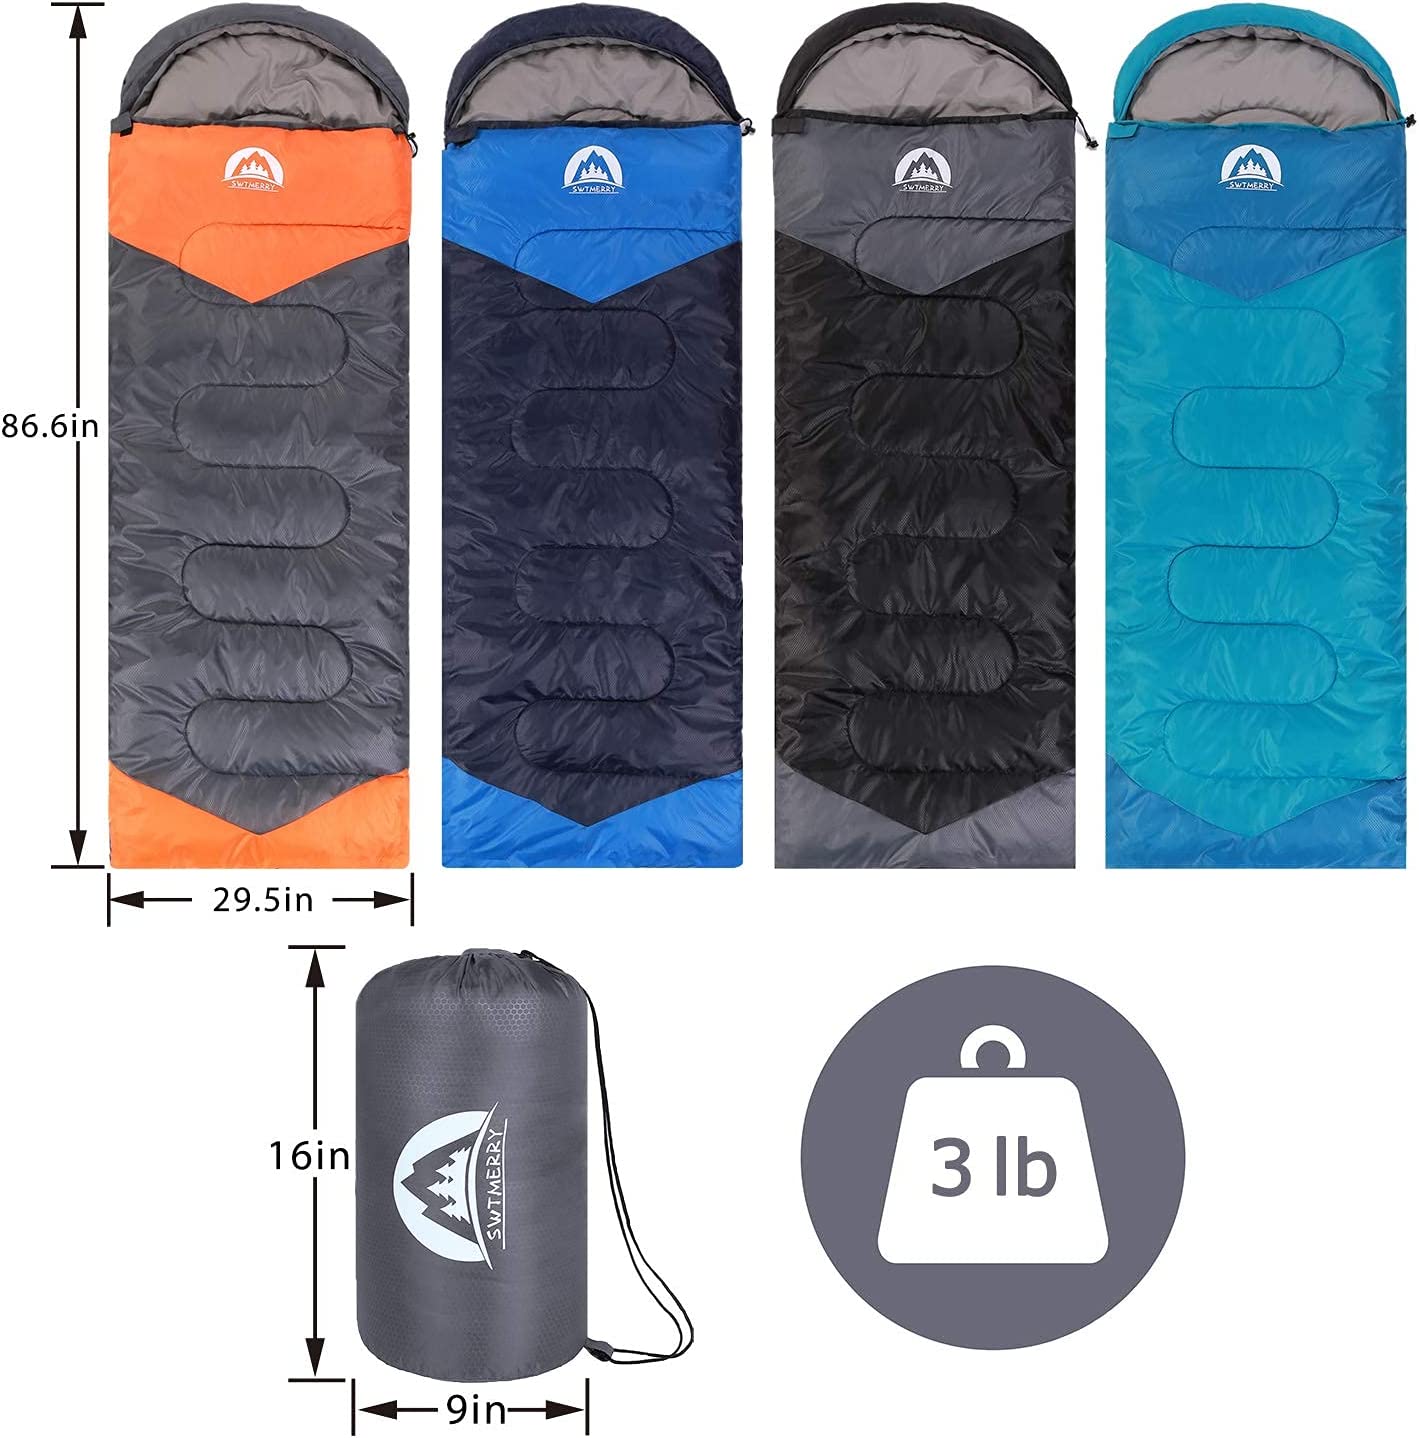 SWTMERRY- Sleeping Bag, Waterproof Indoor & Outdoor Use